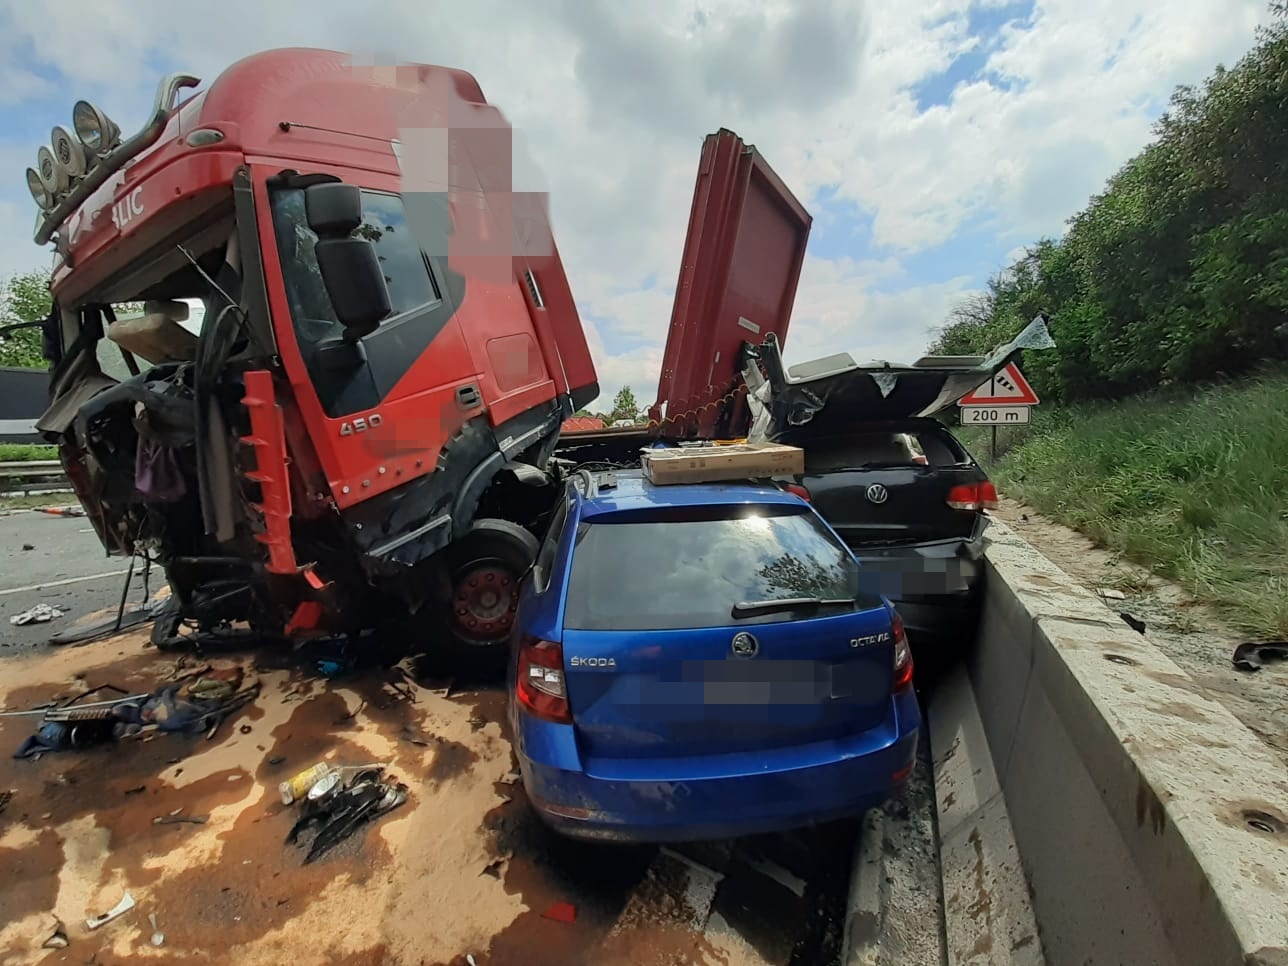 008 - Tragická dopravní nehoda na brněnské dálnici..jpeg